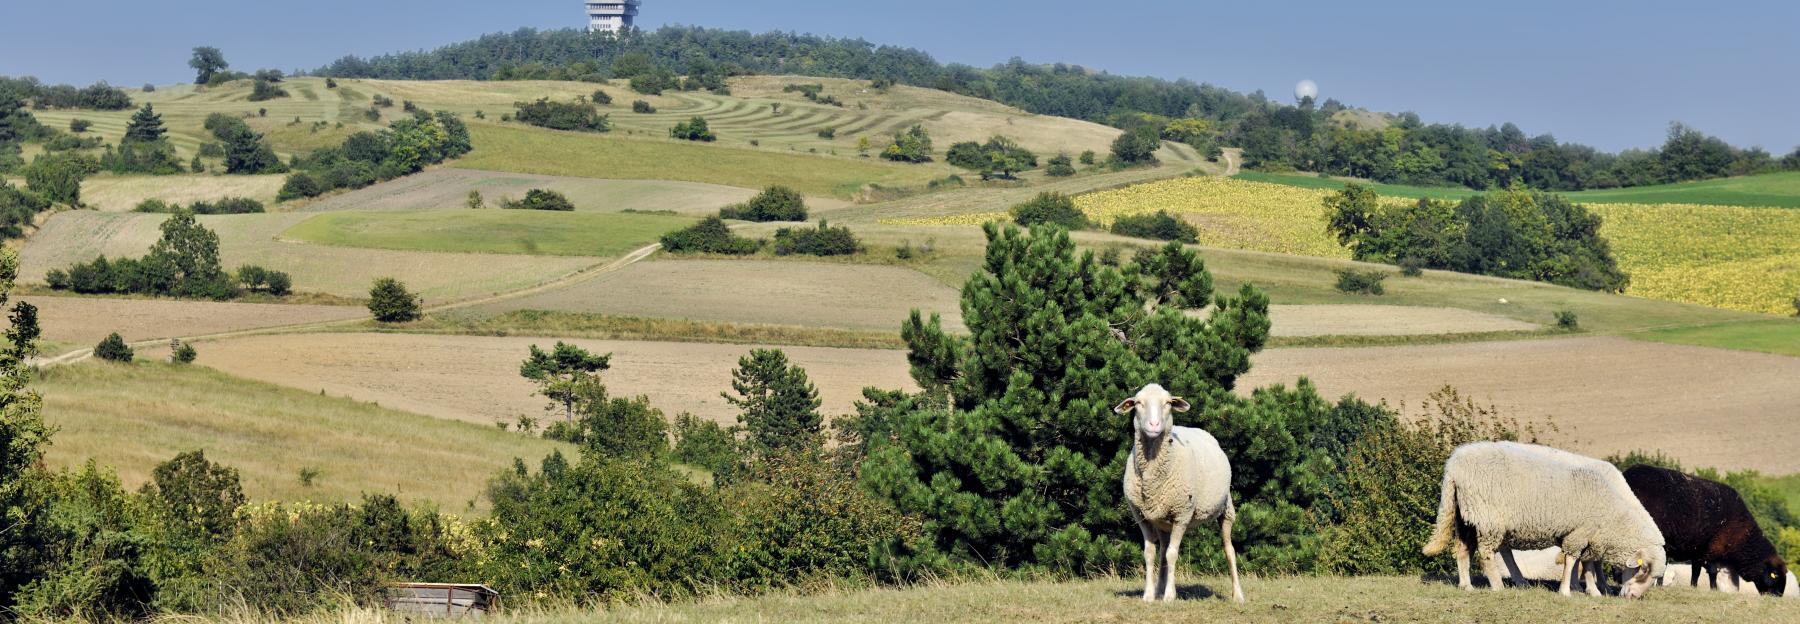 Weidelandschaft im Naturpark, im Vordergrund Schafe, im Hintergrund eine Radar-"Kugel"